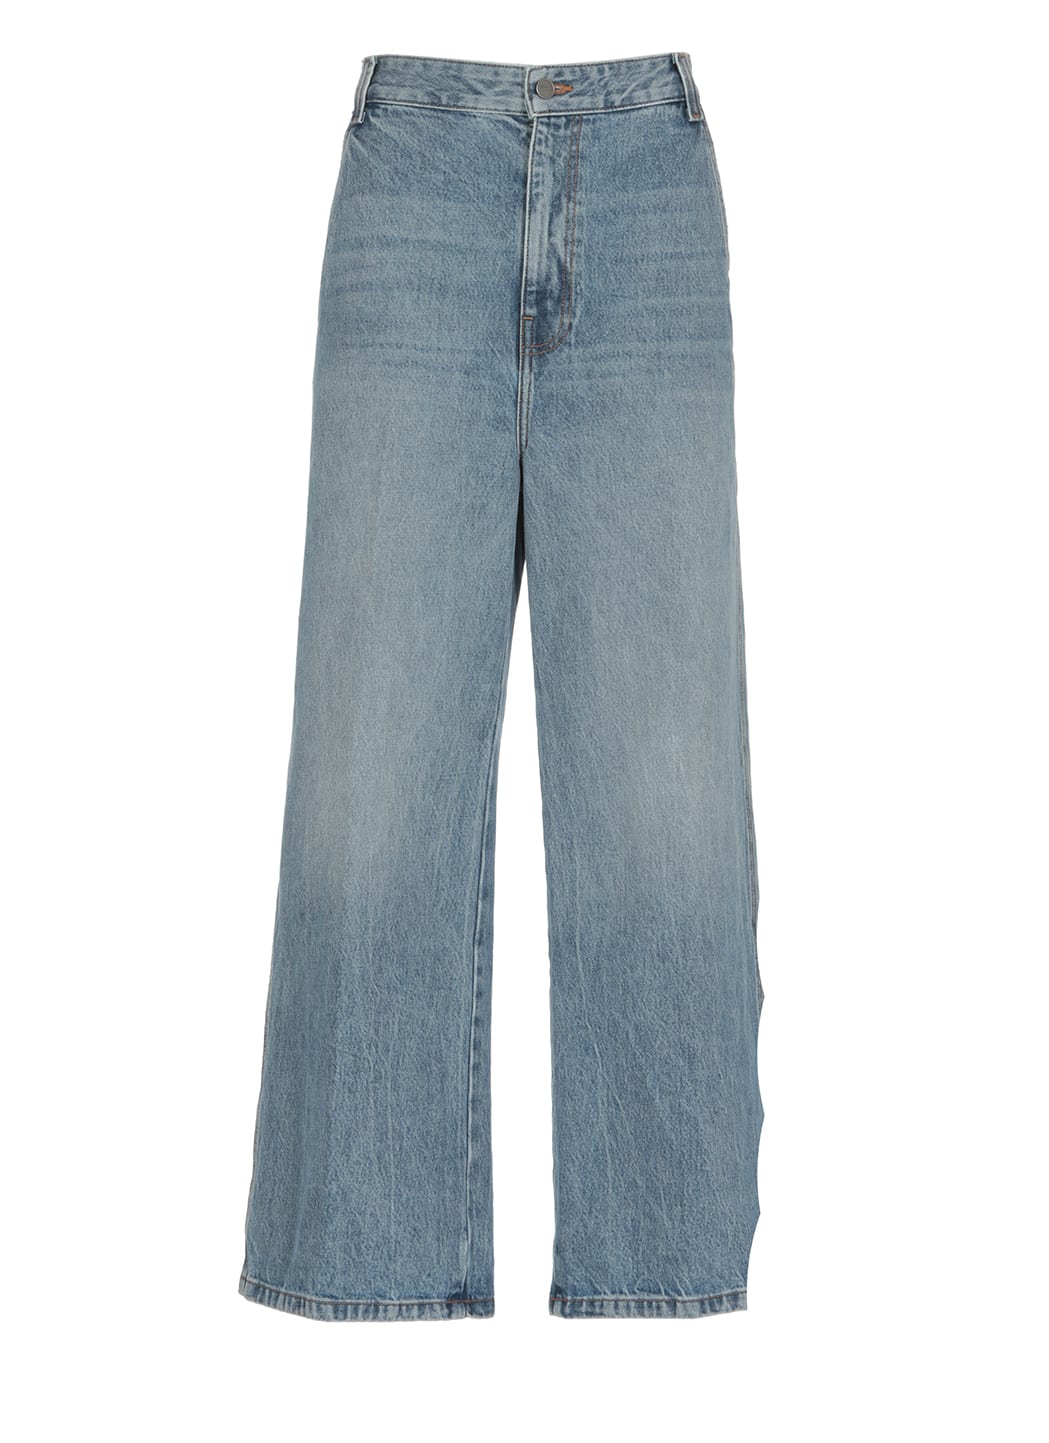 Khaite Cotton Jeans